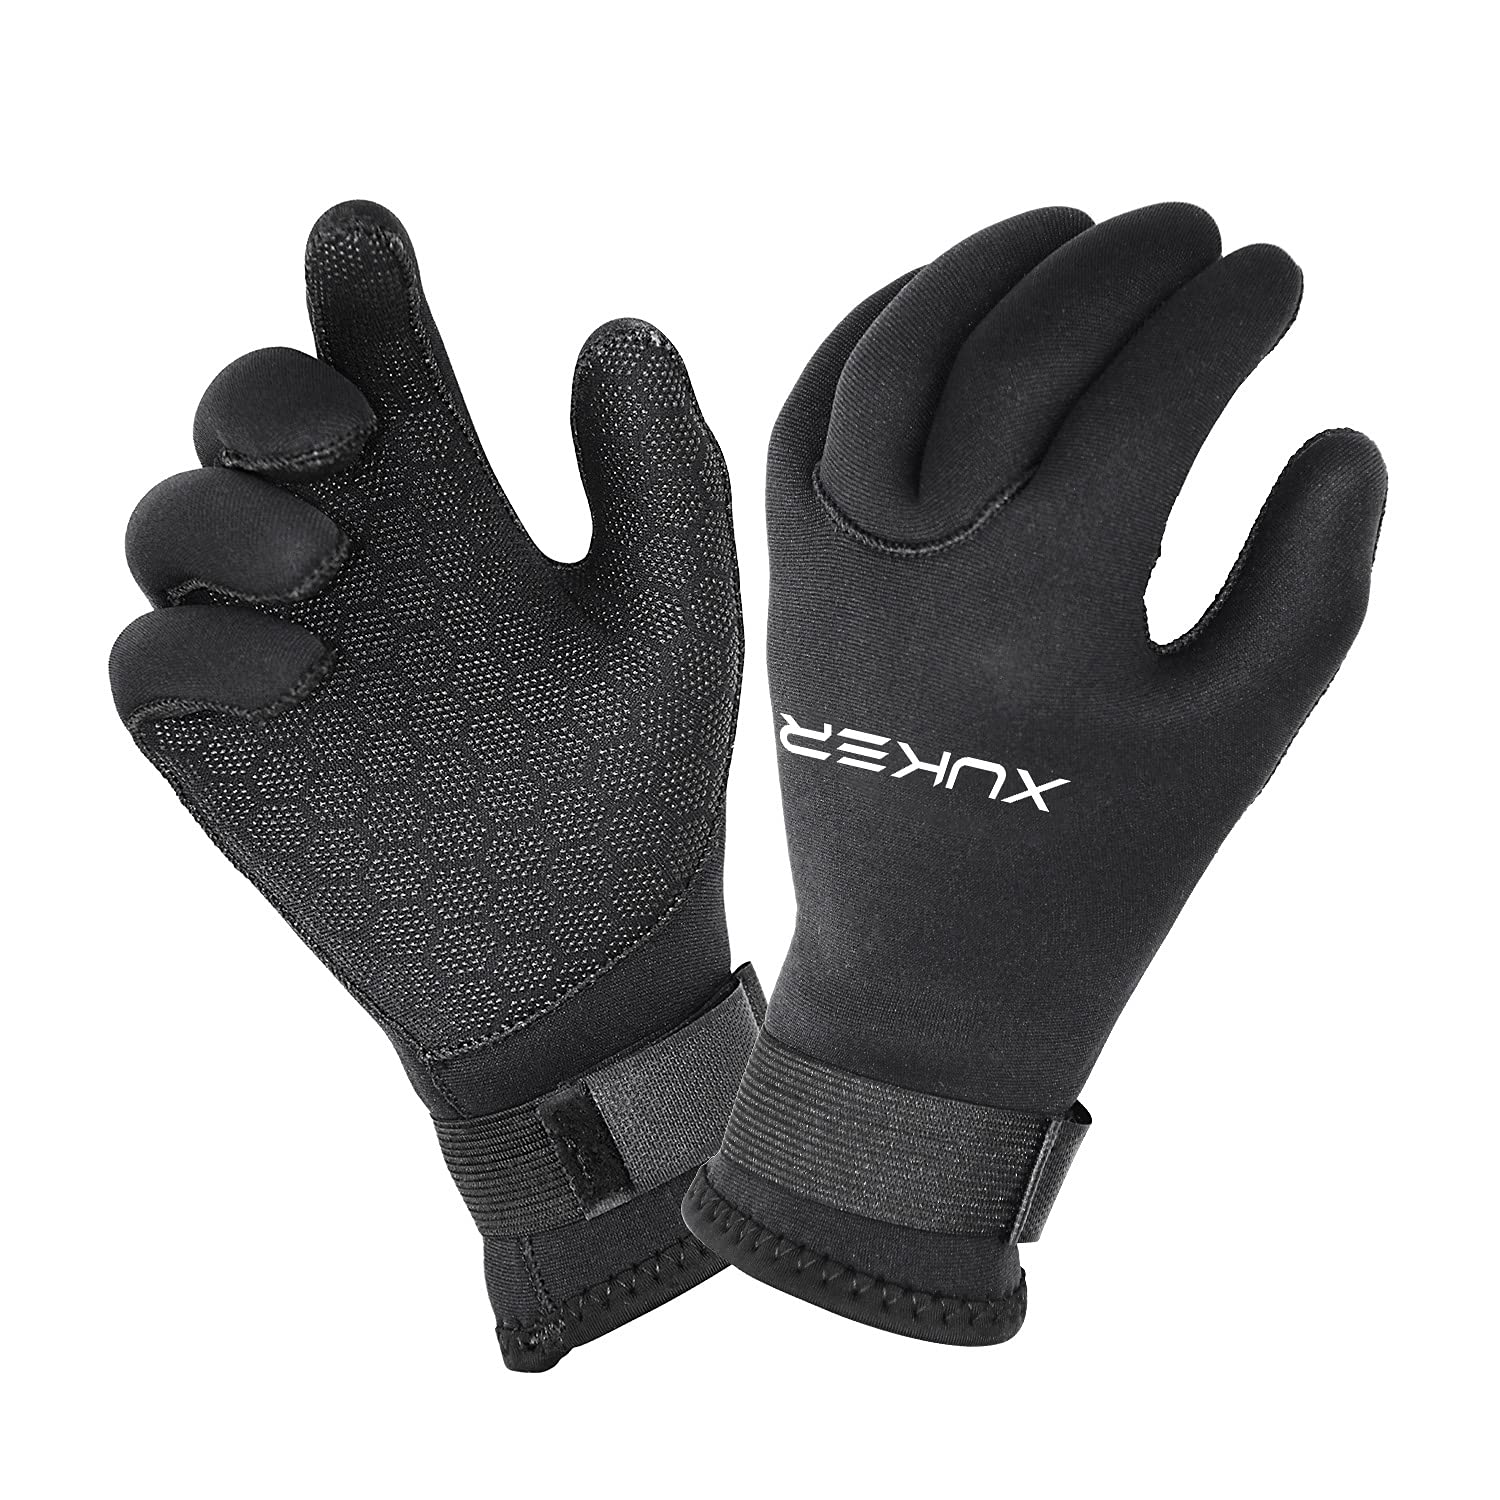 XUKER Water Gloves 3mm 5mm Neoprene Five Finger Warm Wetsuit